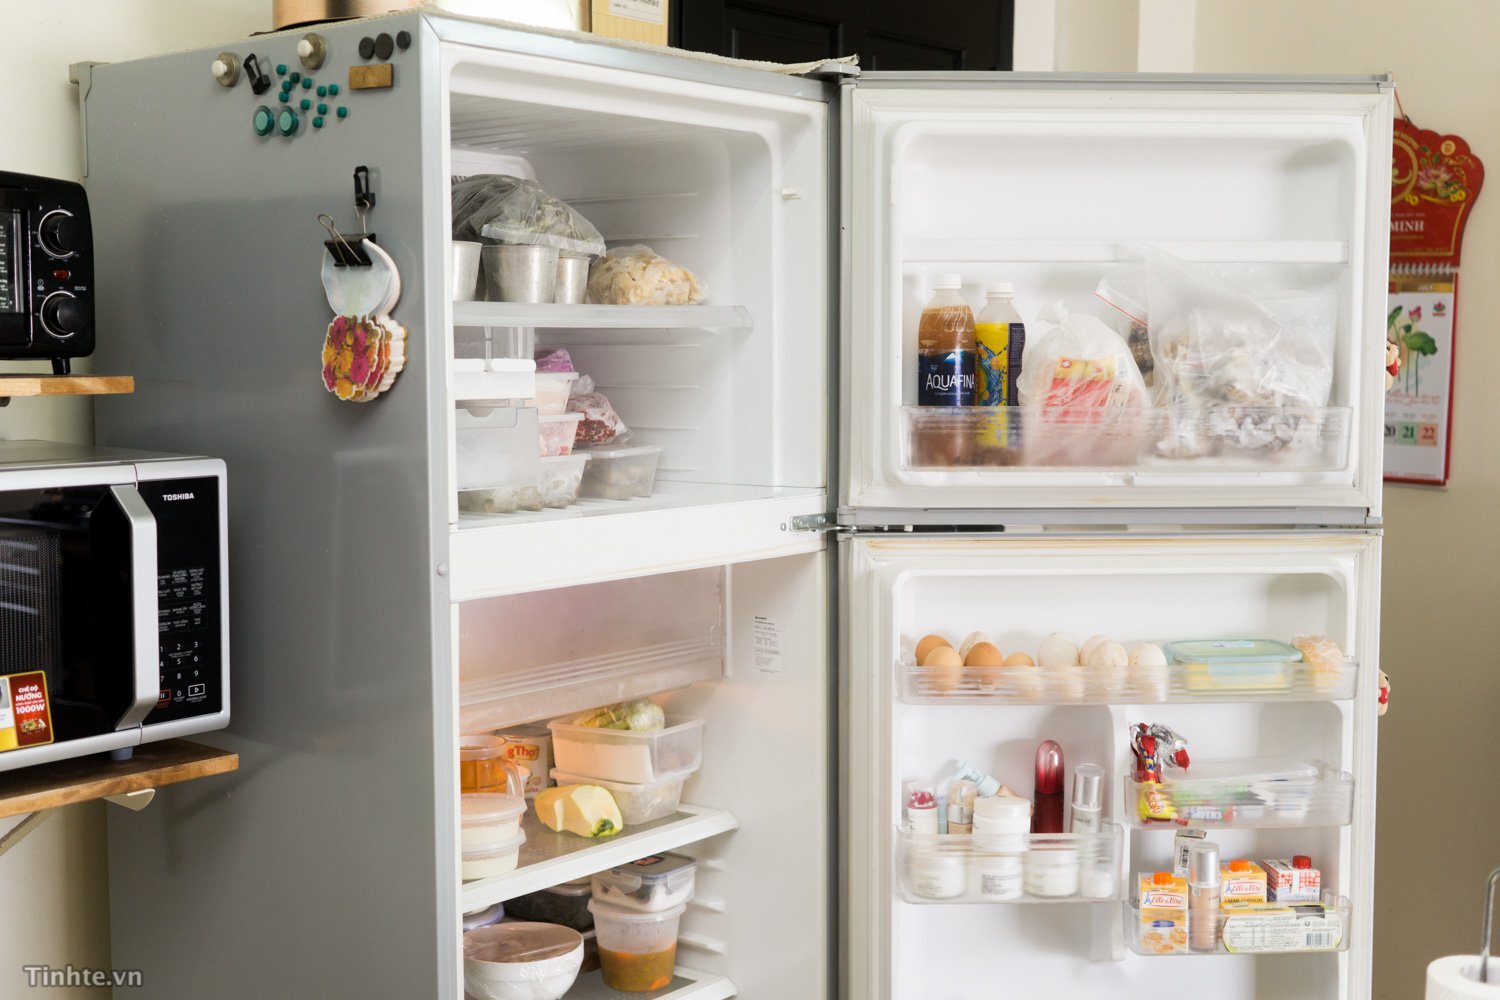 Quên đóng cửa không chỉ làm giảm tuổi thọ máy lạnh mà còn khiến thực phẩm bên trong bị hư